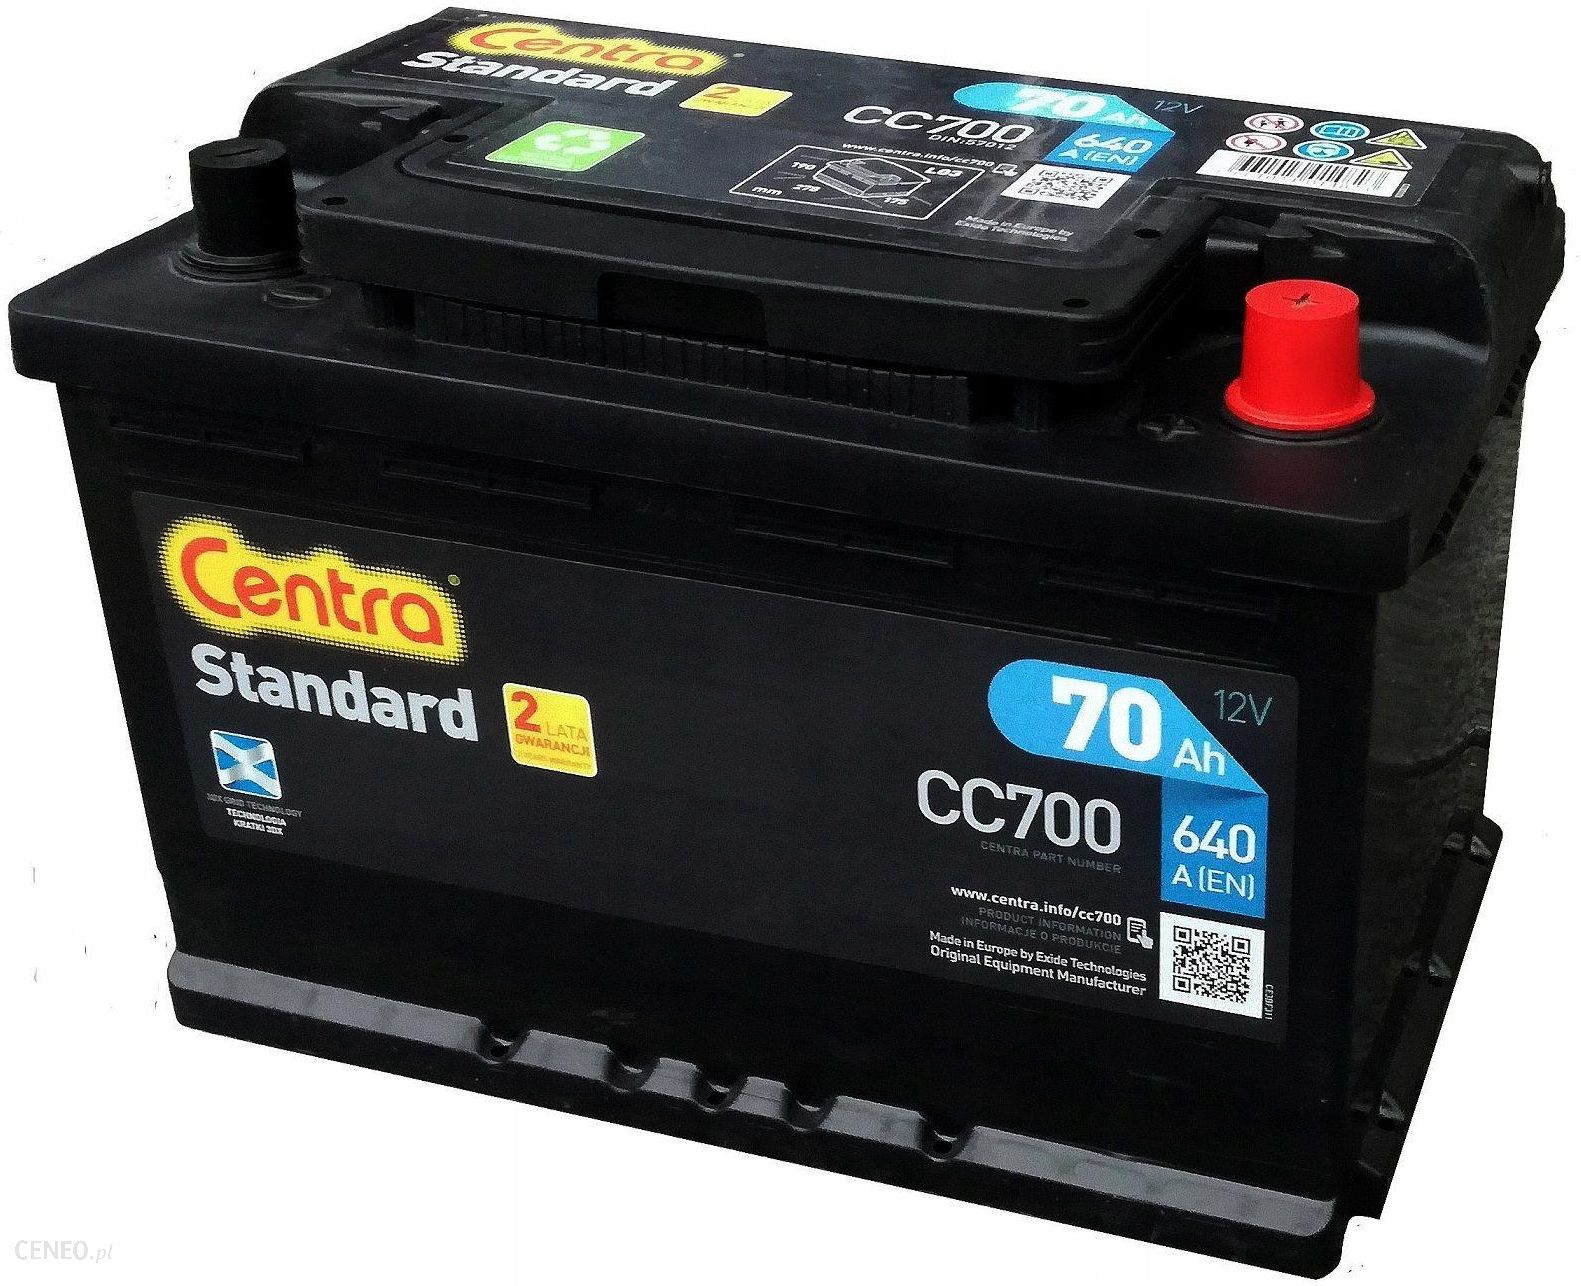 Centra Standard Cc700 12V70Ah 640A (P+)